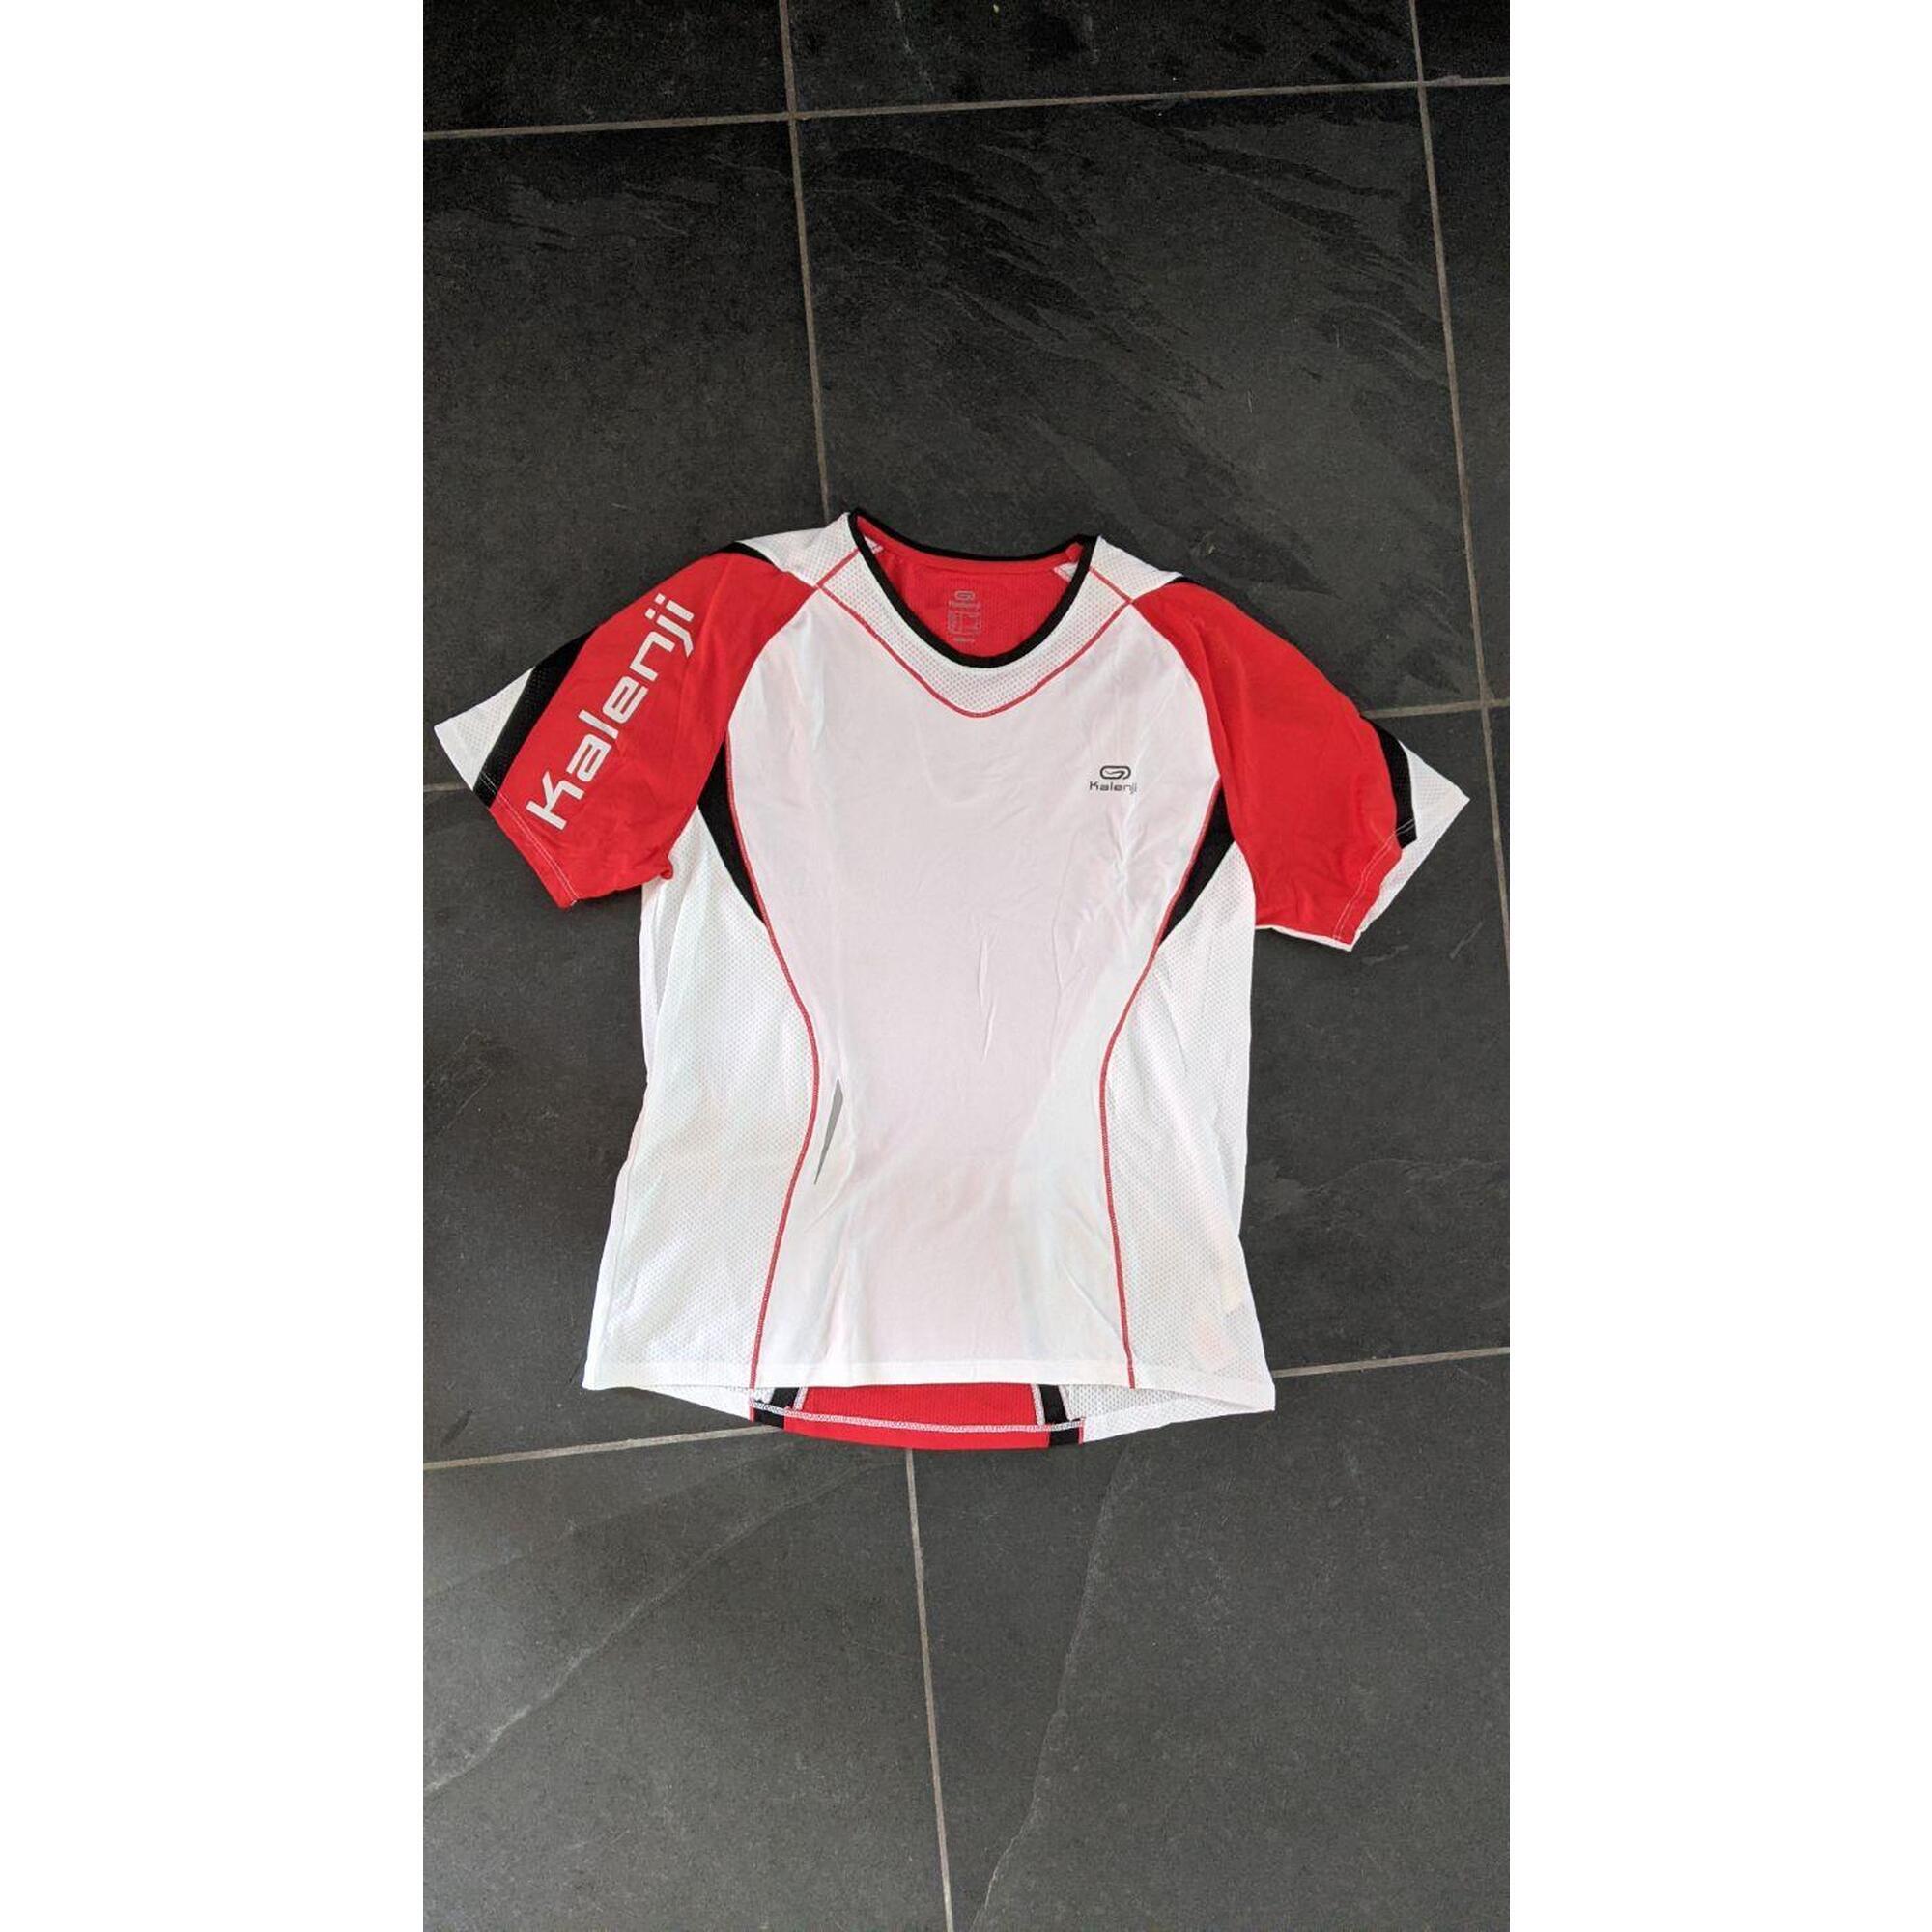 C2C - T-shirt de course Kalenji performance rouge clair-blanc - Taille L